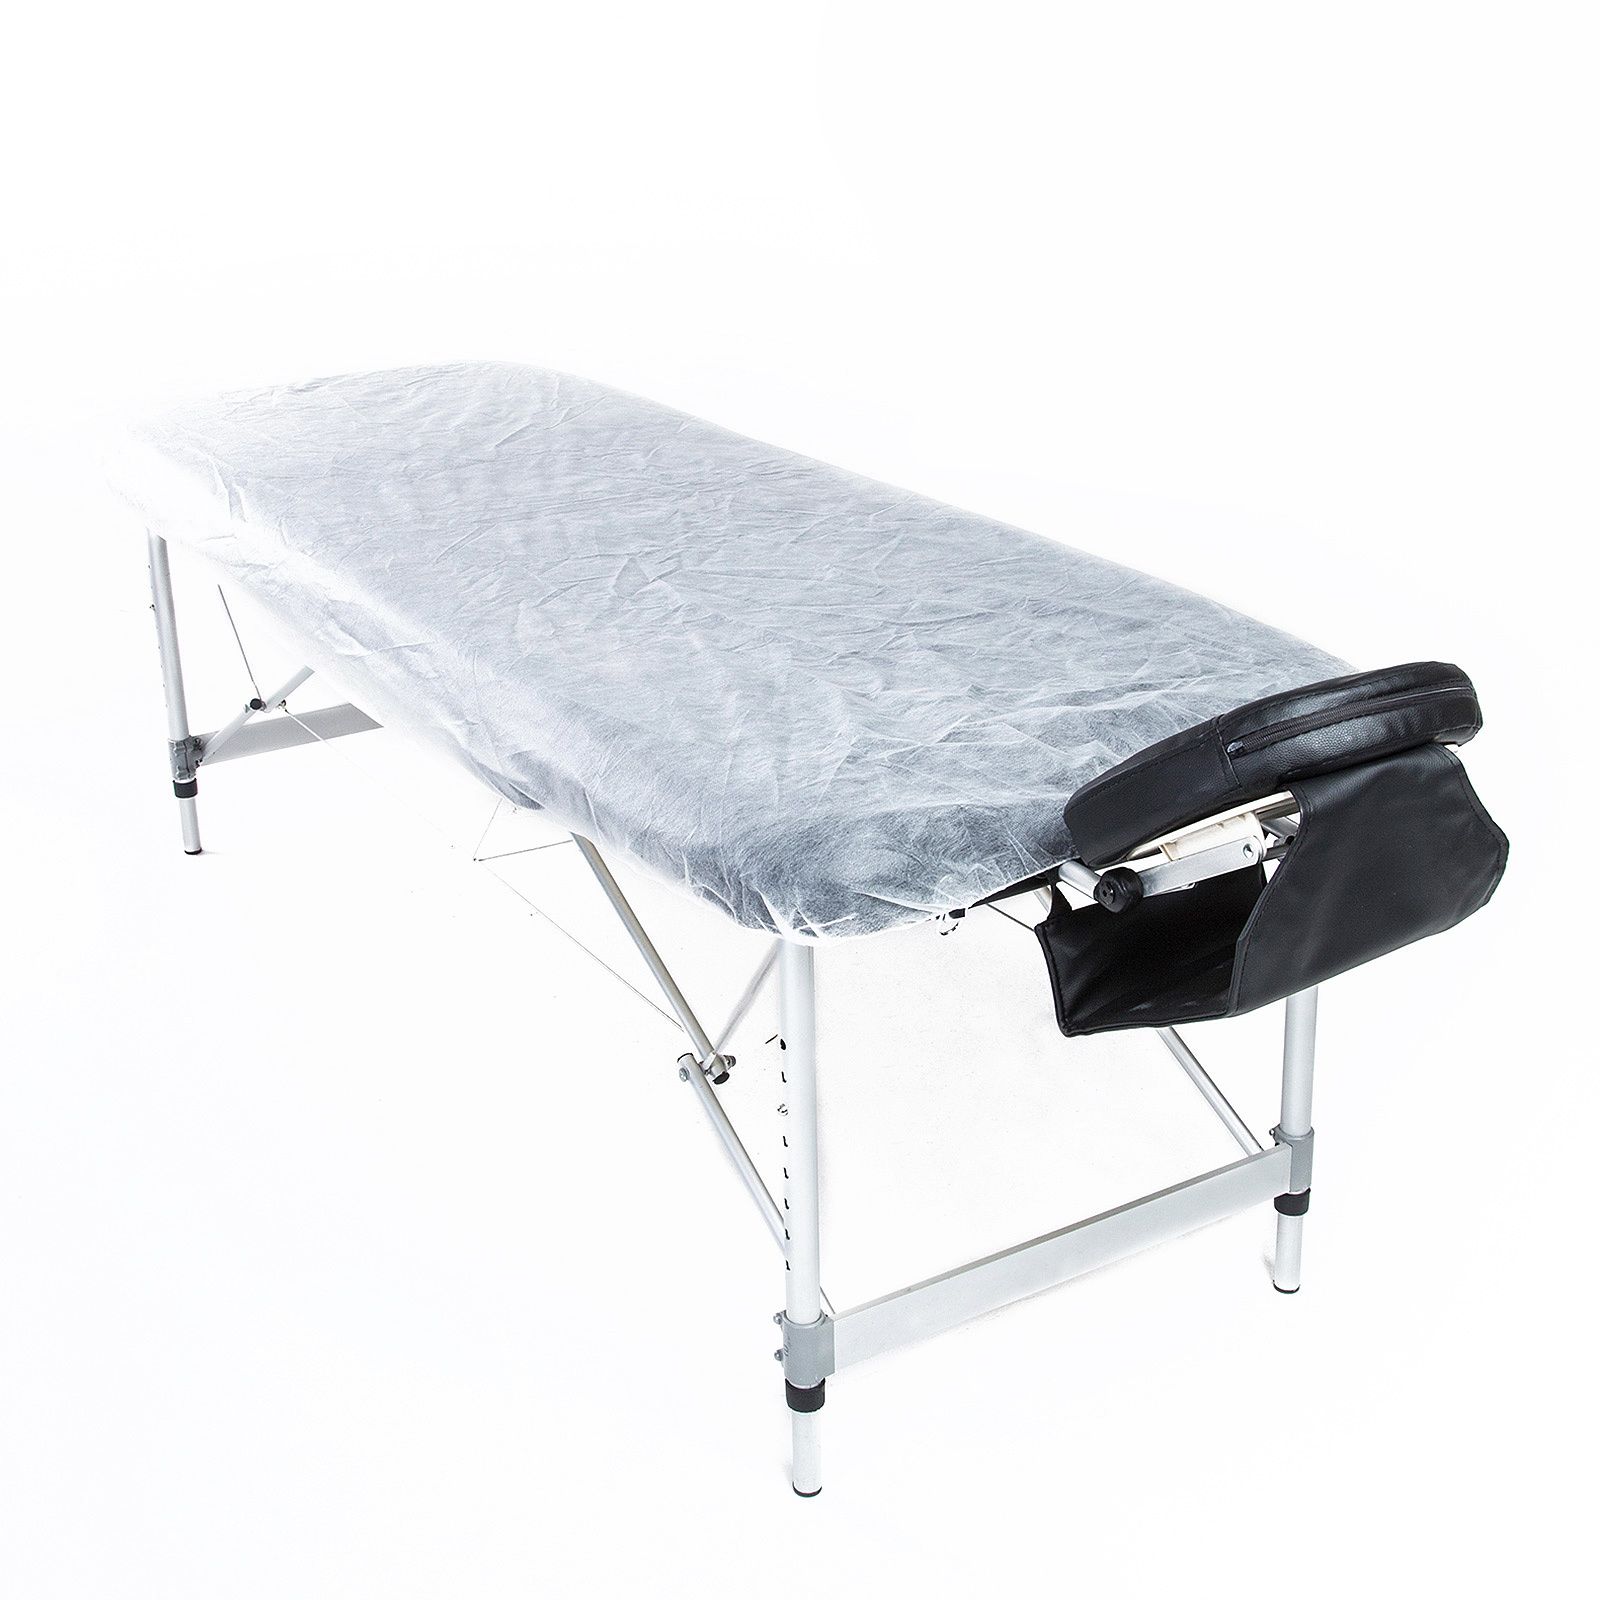 60pcs Disposable Massage Table Sheet Cover 180cm x 75cm